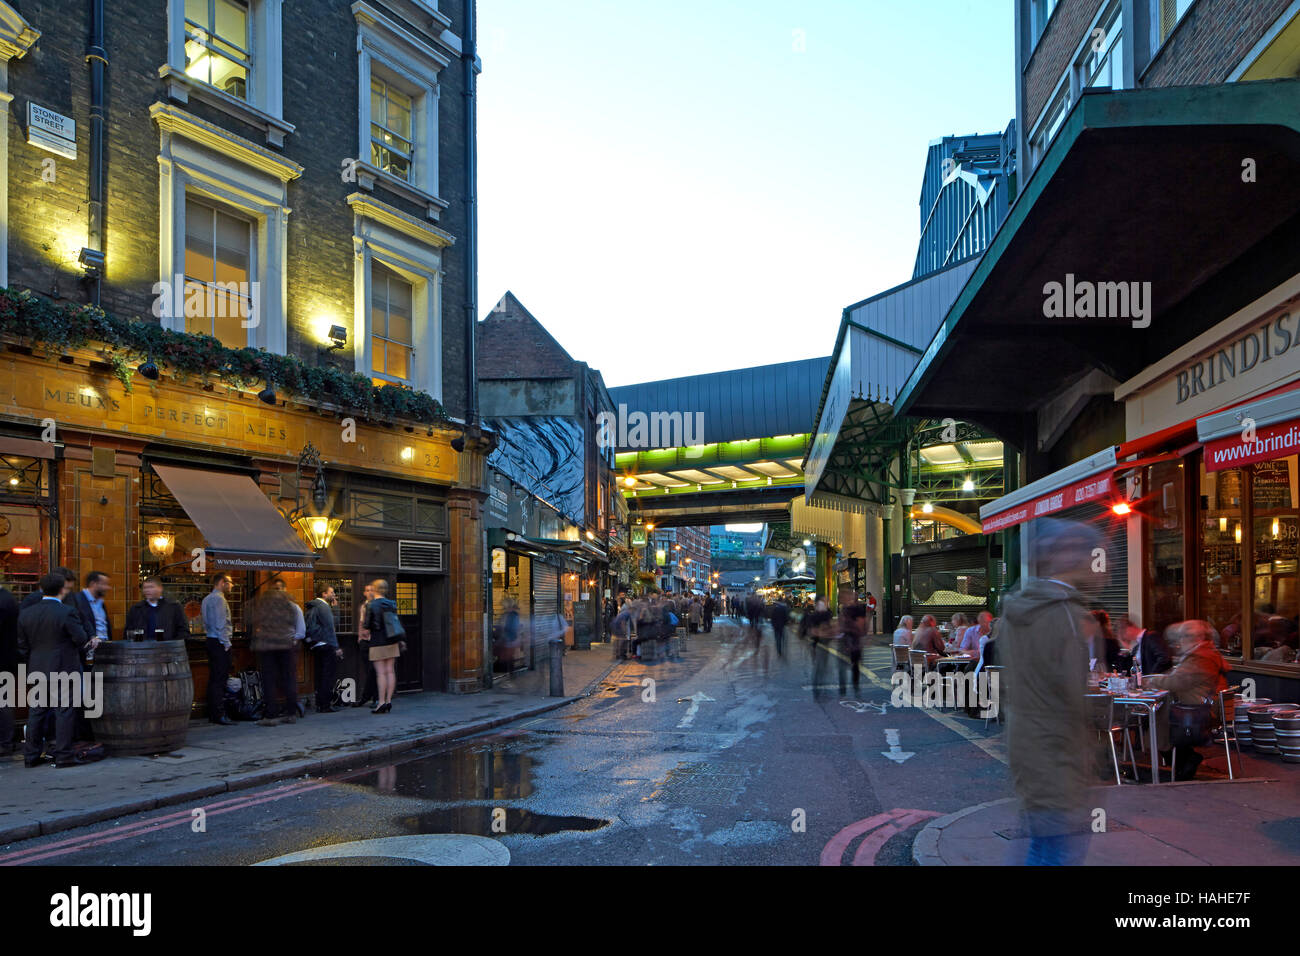 Twilight-Ansichten rund um London Borough Market. Architektonische Lager, verschiedene, Vereinigtes Königreich. Architekt: n/a, 2016. Stockfoto